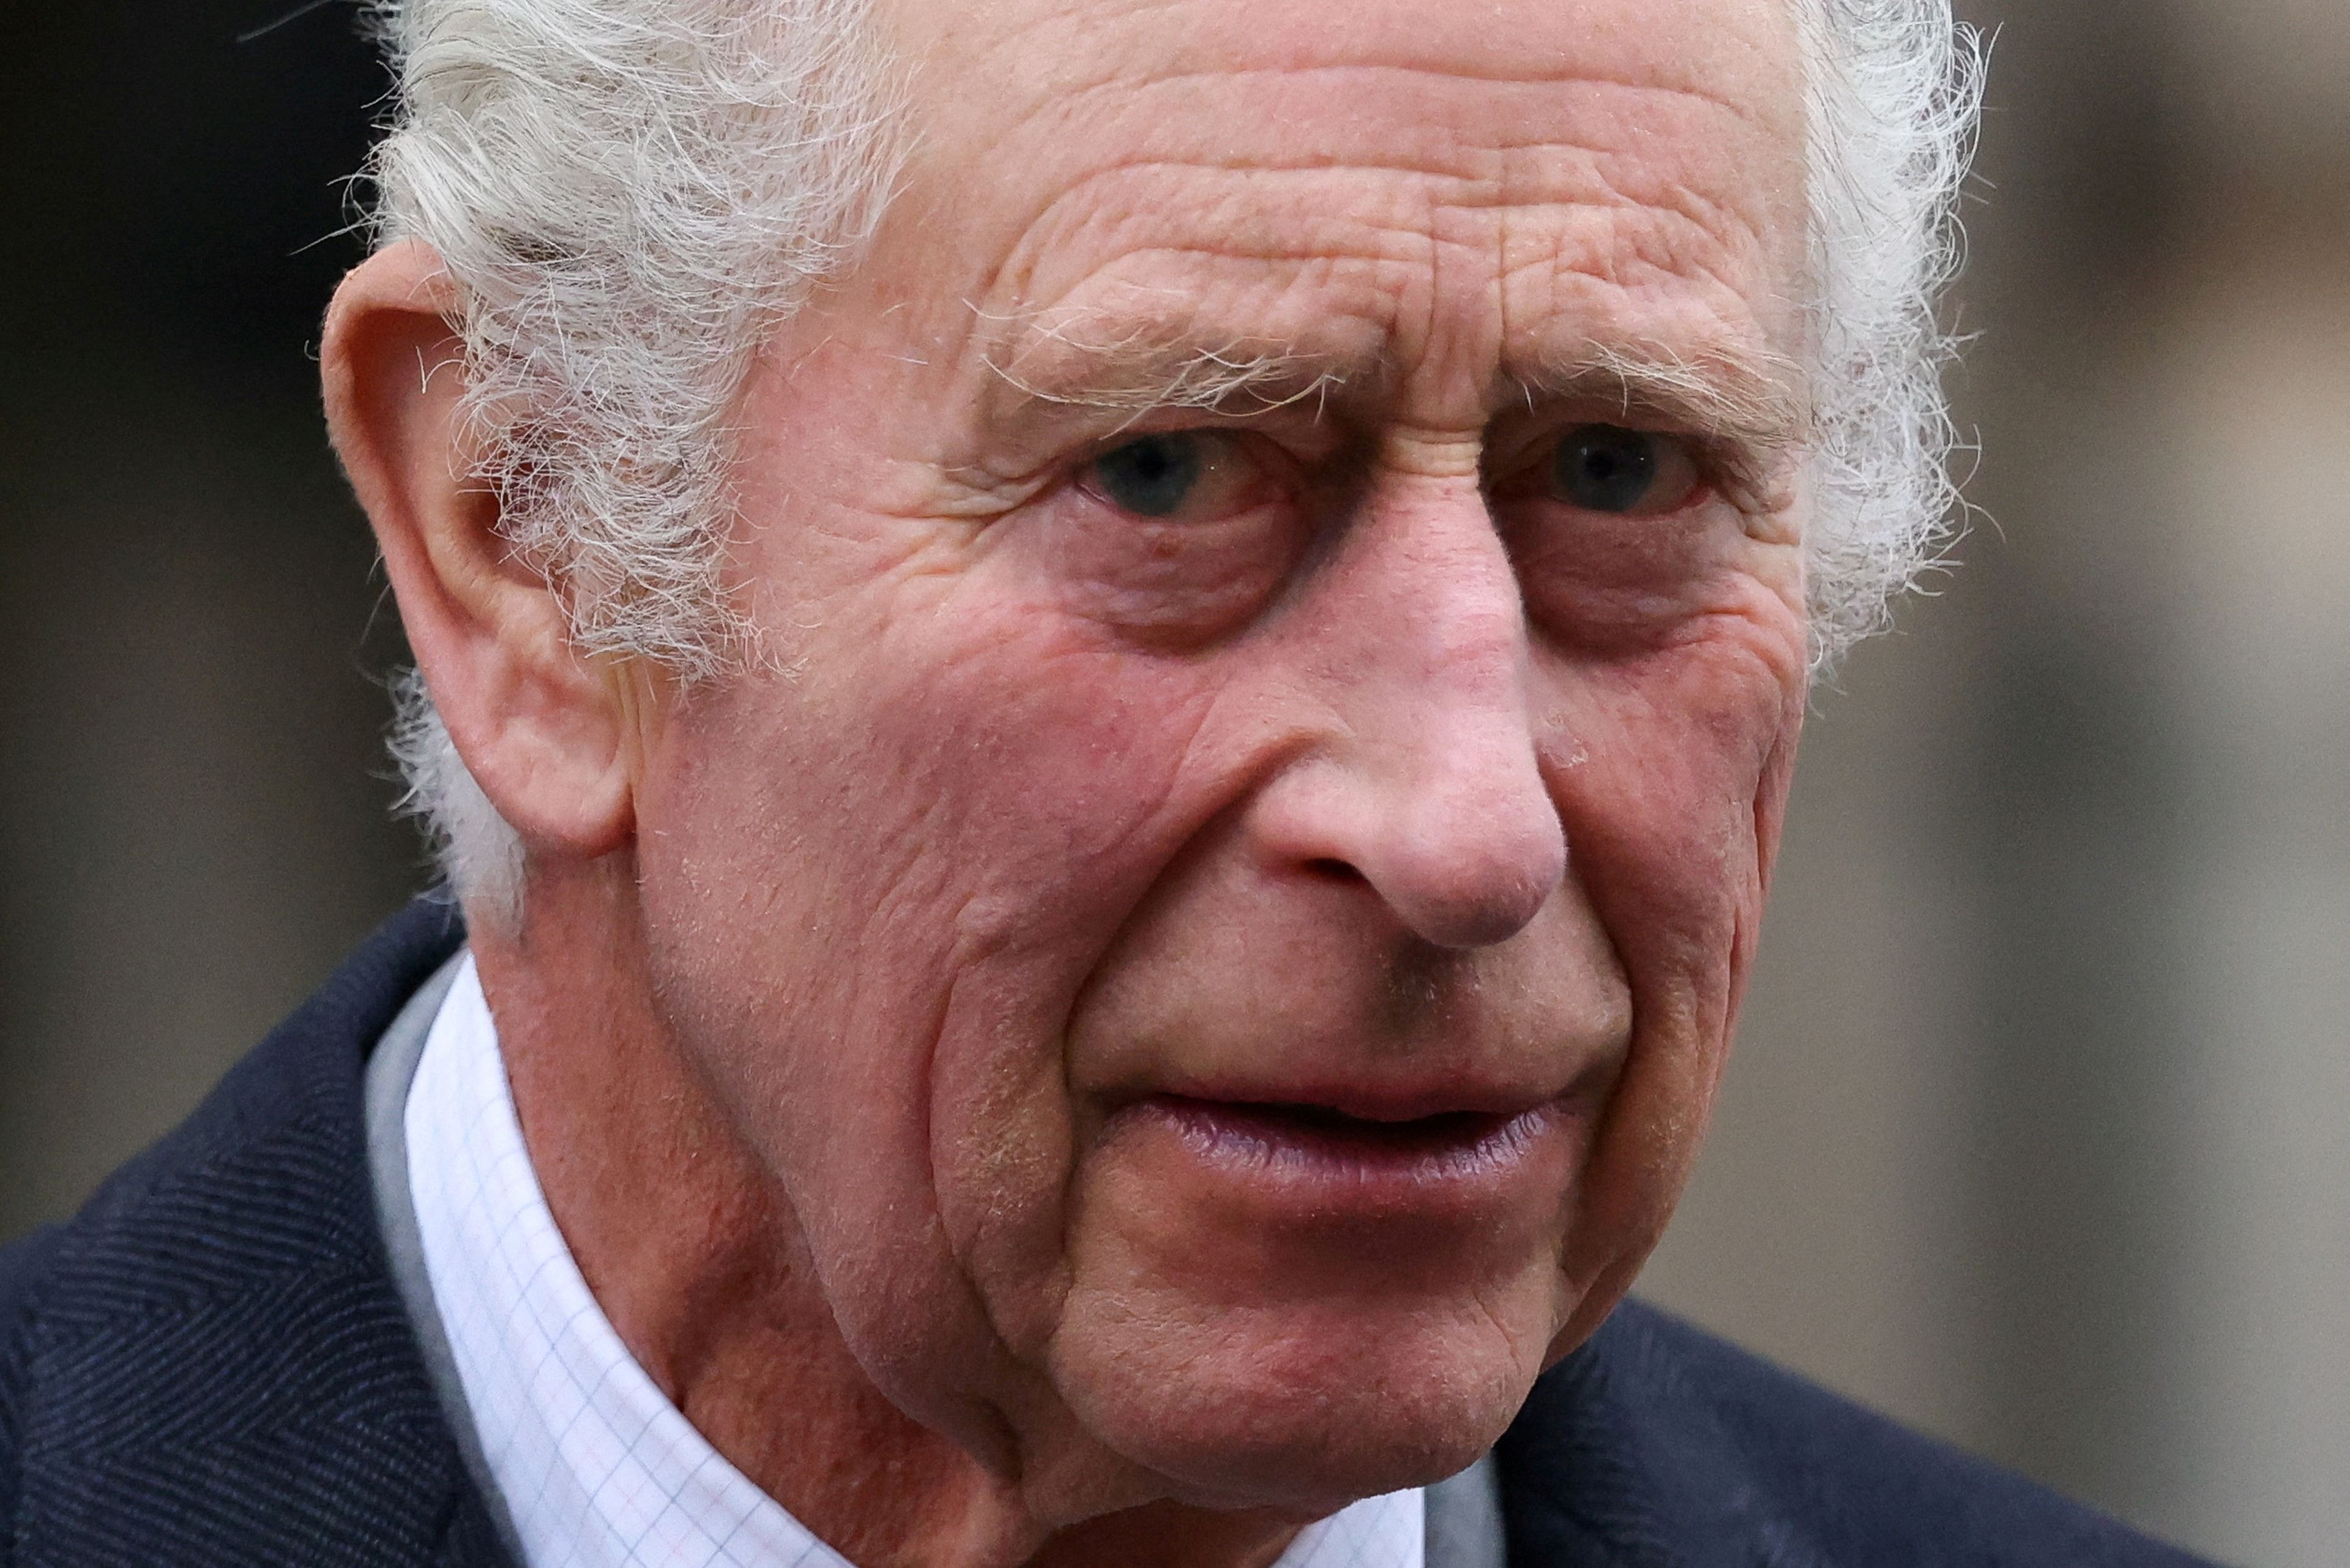 La foto del día: El rey Carlos III de Inglaterra ha sido diagnosticado con un cáncer e inició ayer el tratamiento, una semana después de haber abandonado la clínica privada de Londres donde fue intervenido de un agrandamiento "benigno" de la próstata.